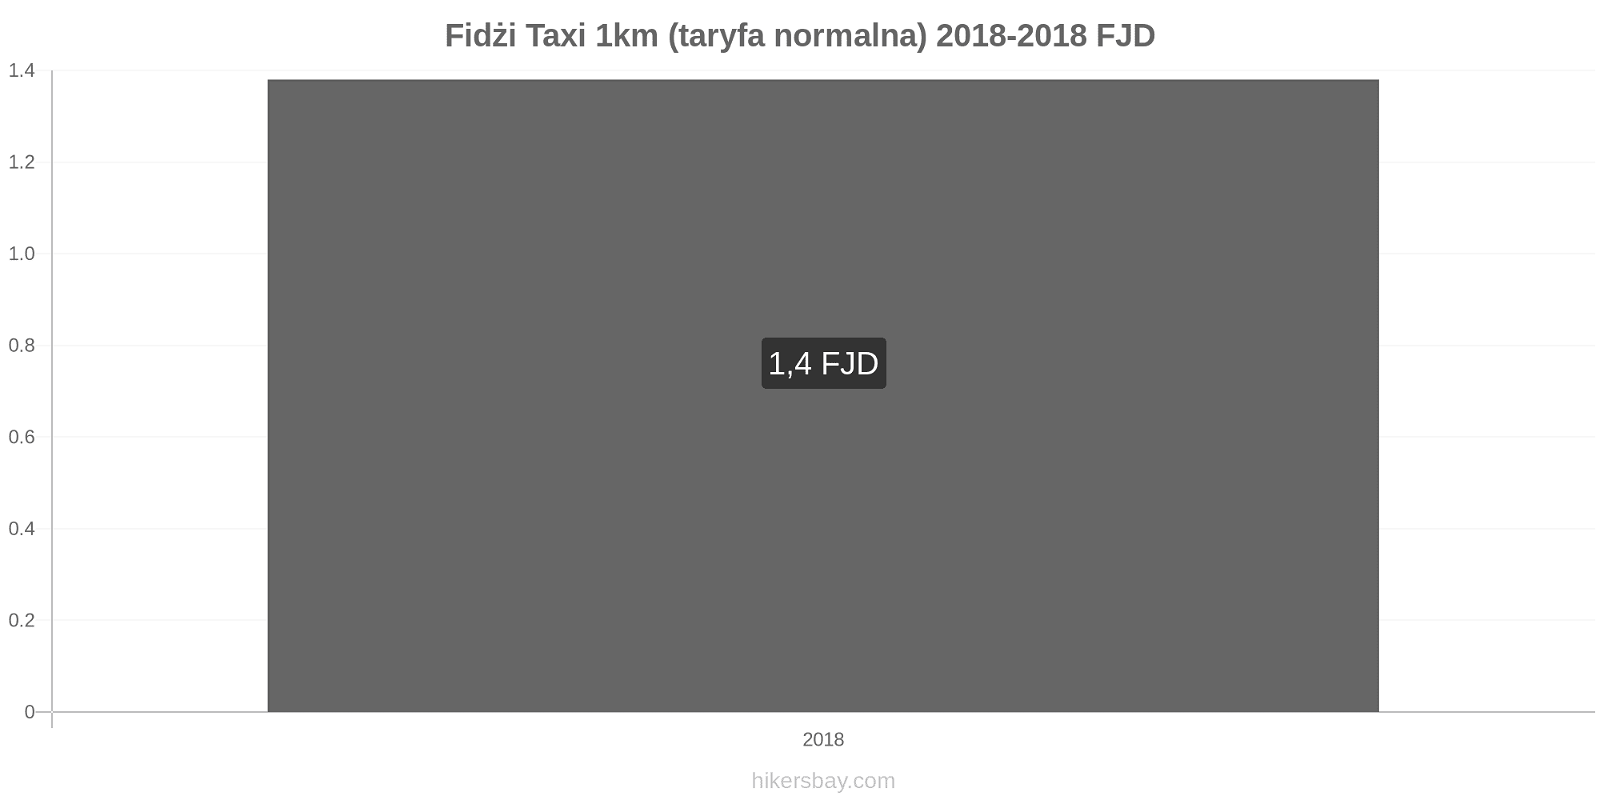 Fidżi zmiany cen Taxi 1km (taryfa normalna) hikersbay.com